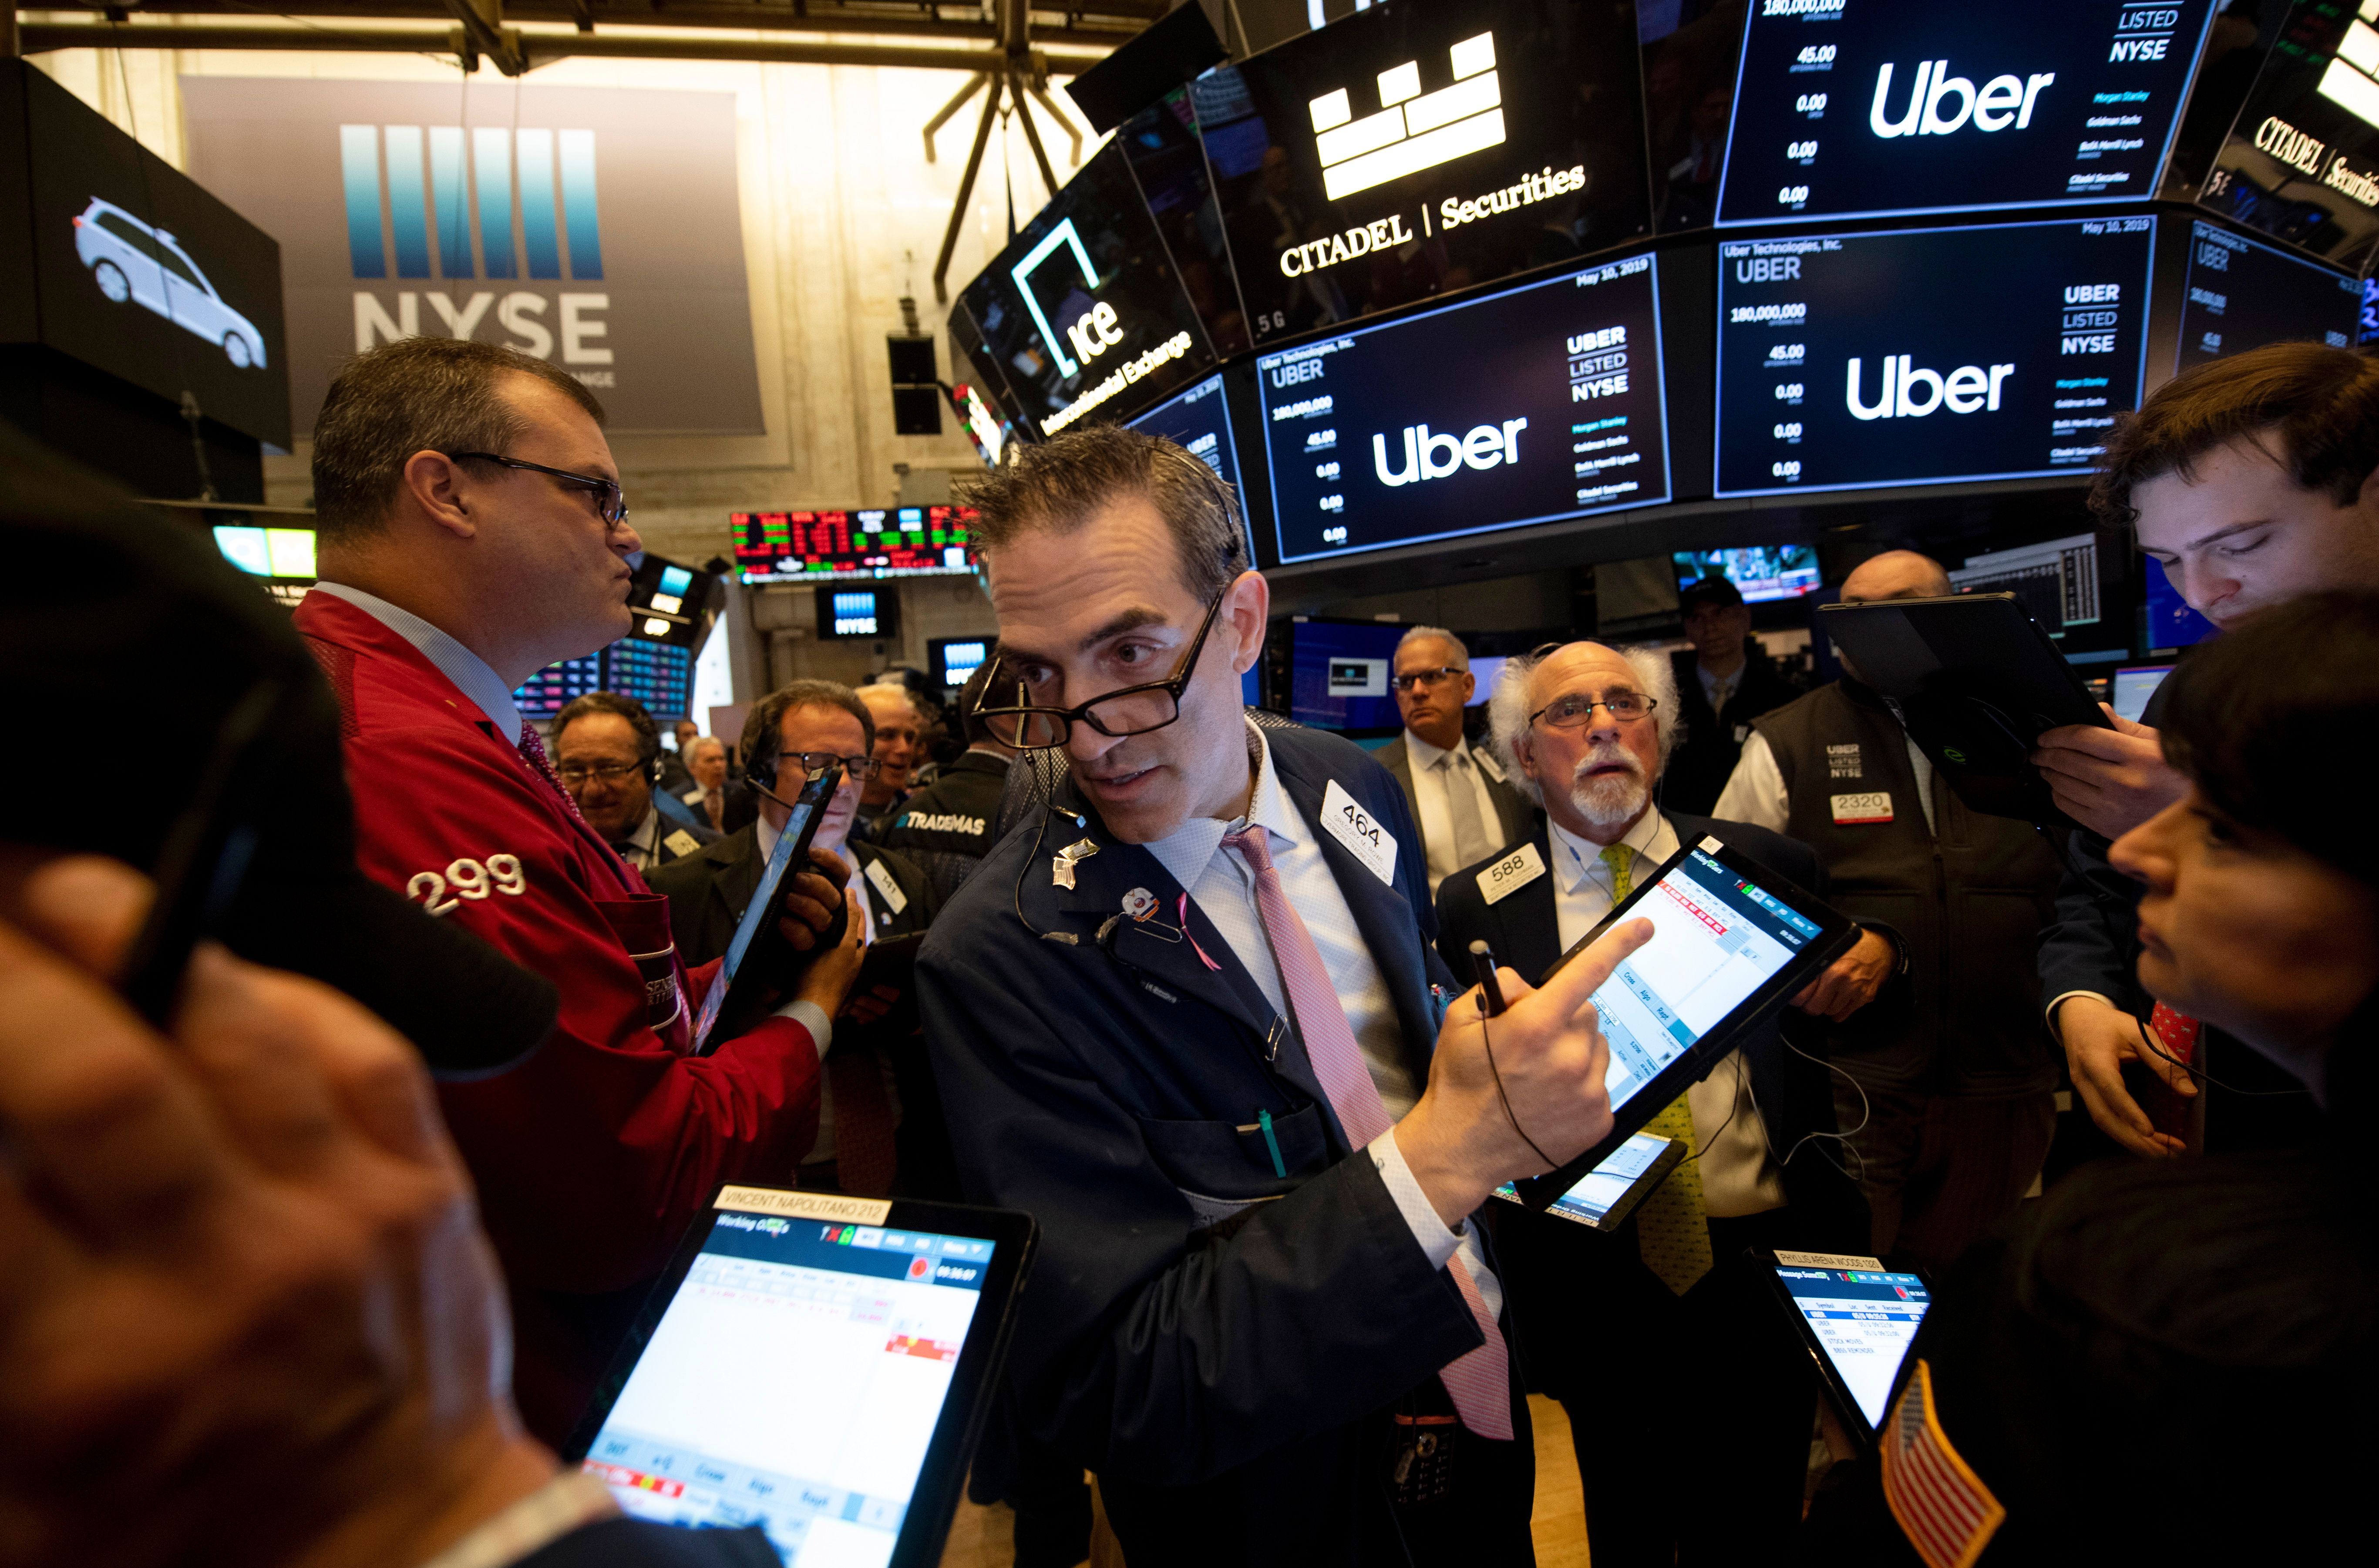 New York Stock Exchange on Ubers opening.